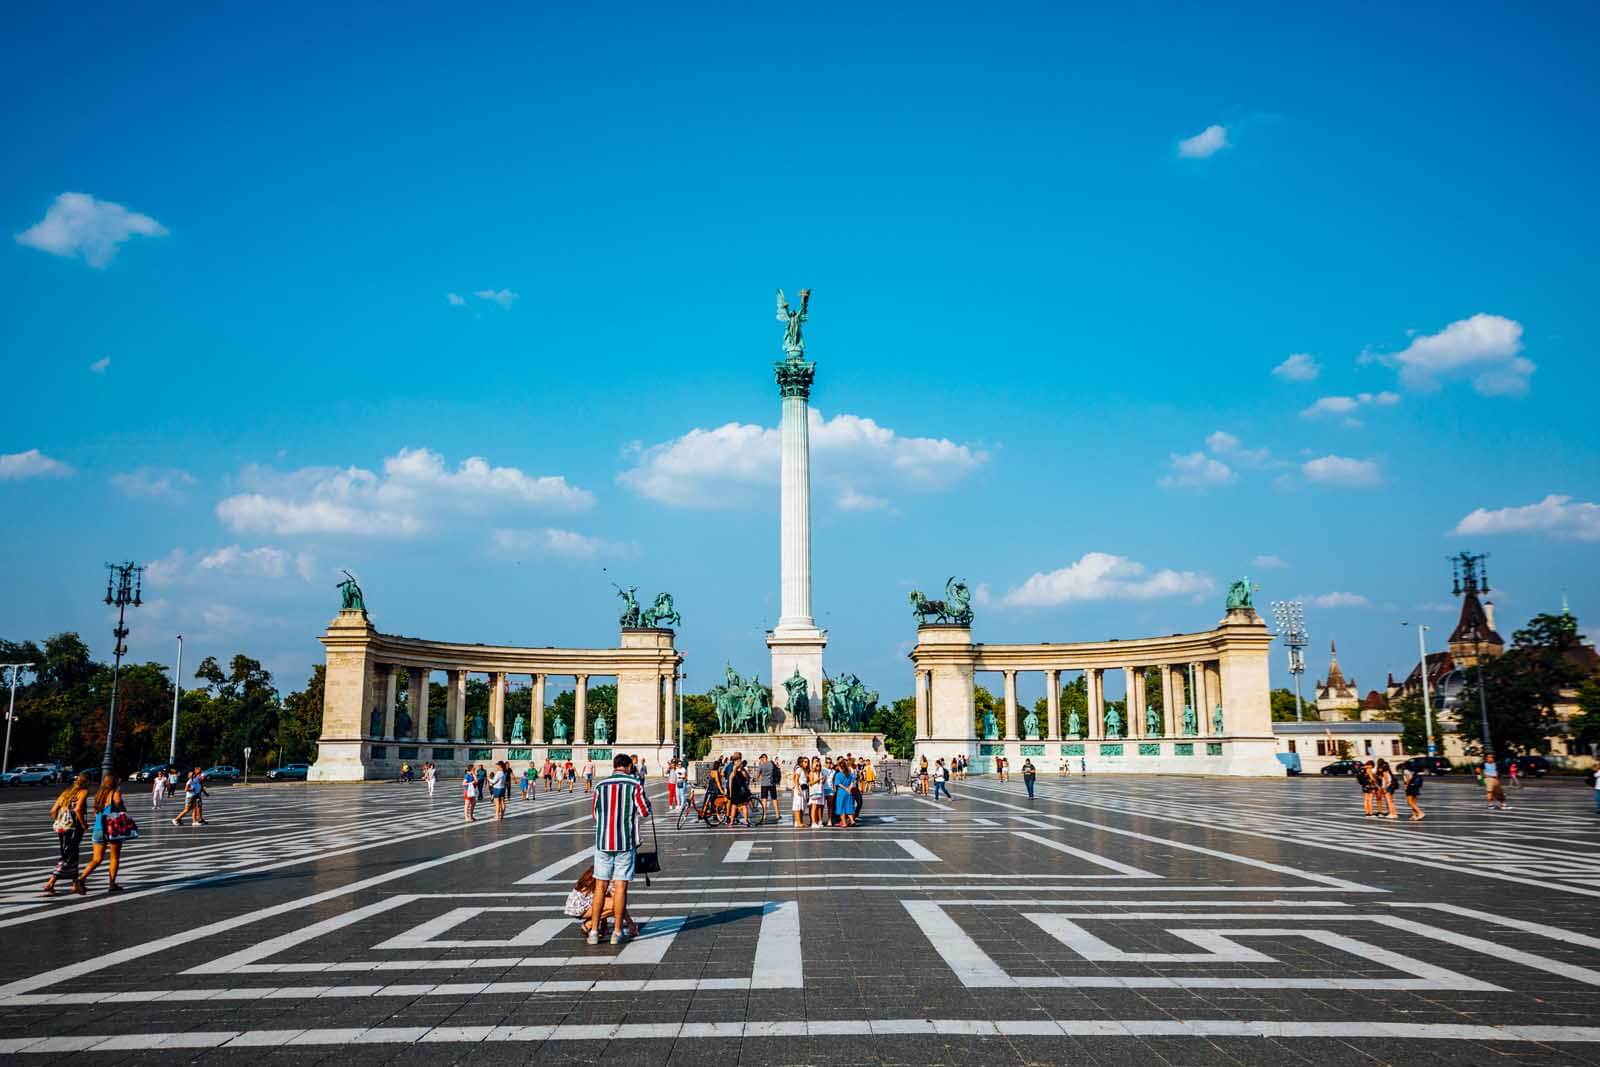 Millennium Monument Budapest